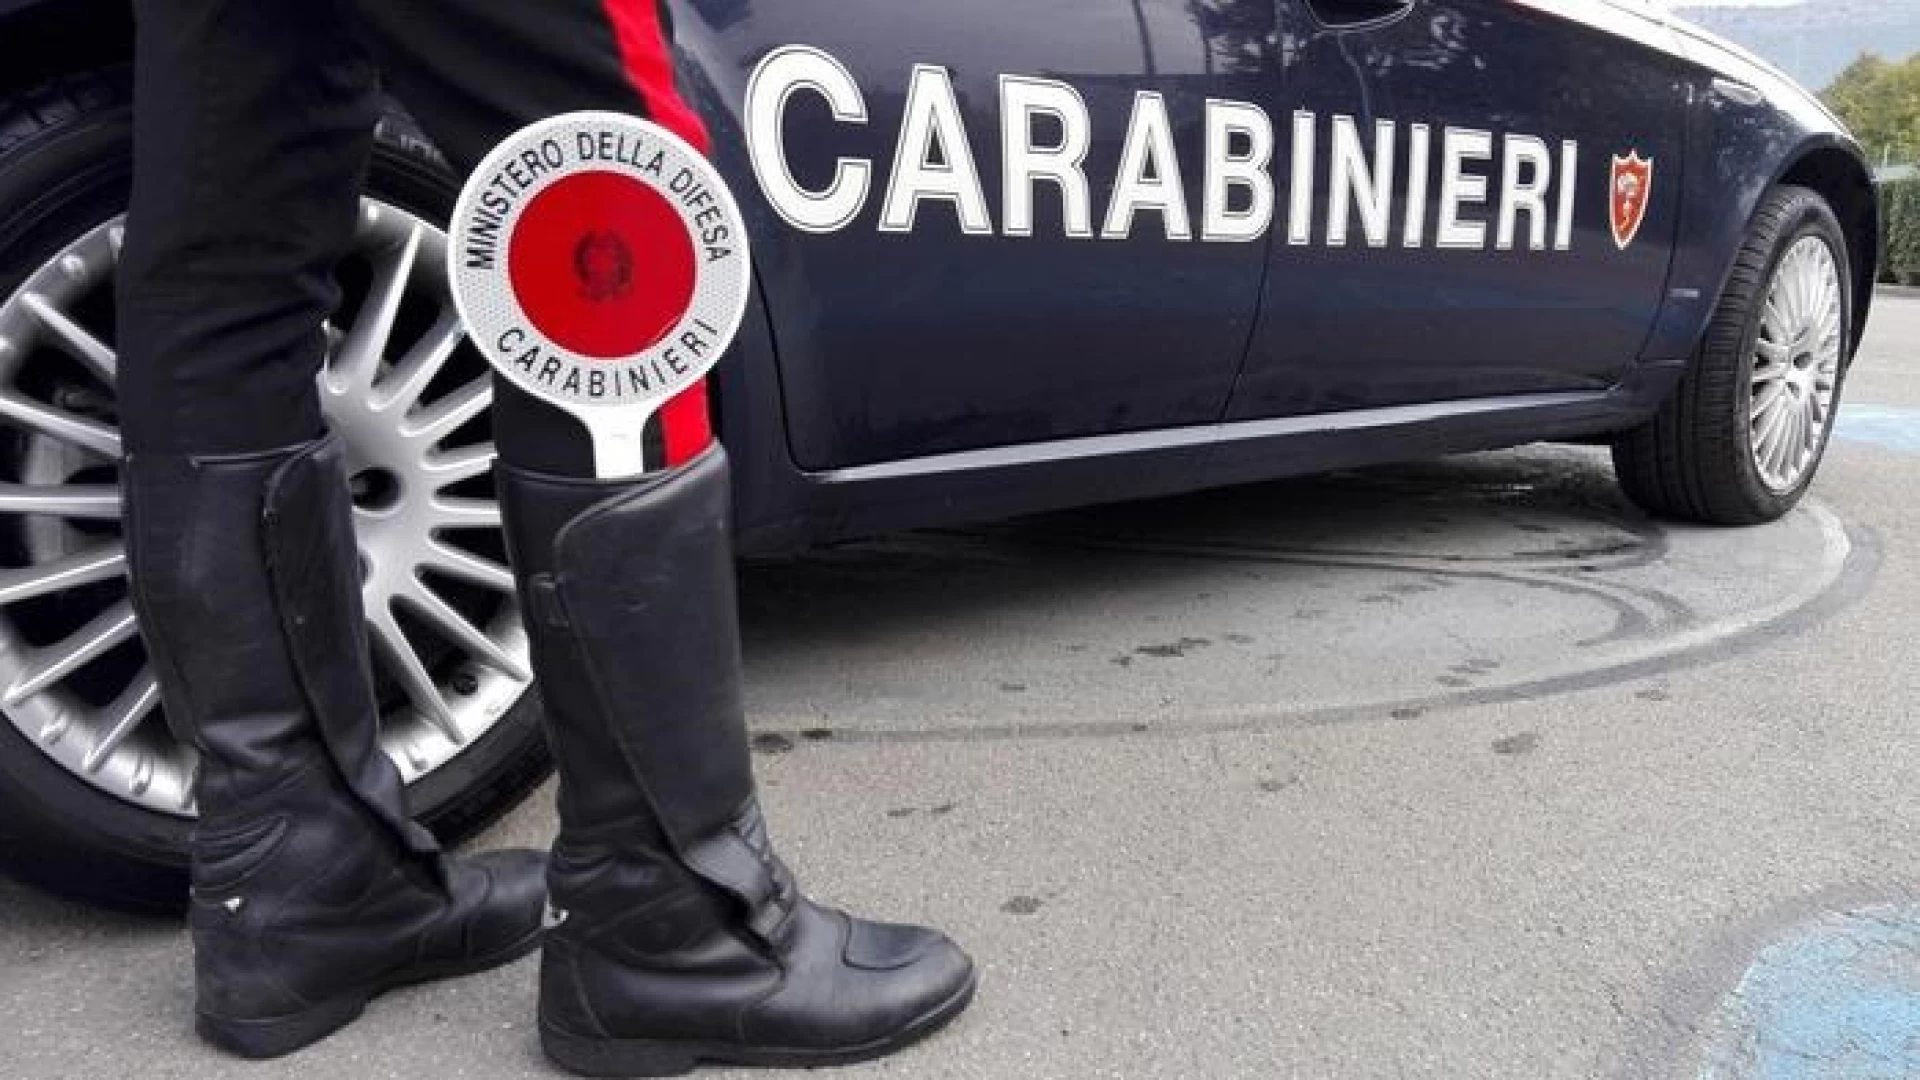 Alto Molise:  i Carabinieri arrestano due persone che stavano tentando di aprire conti correnti postali con documenti falsi.